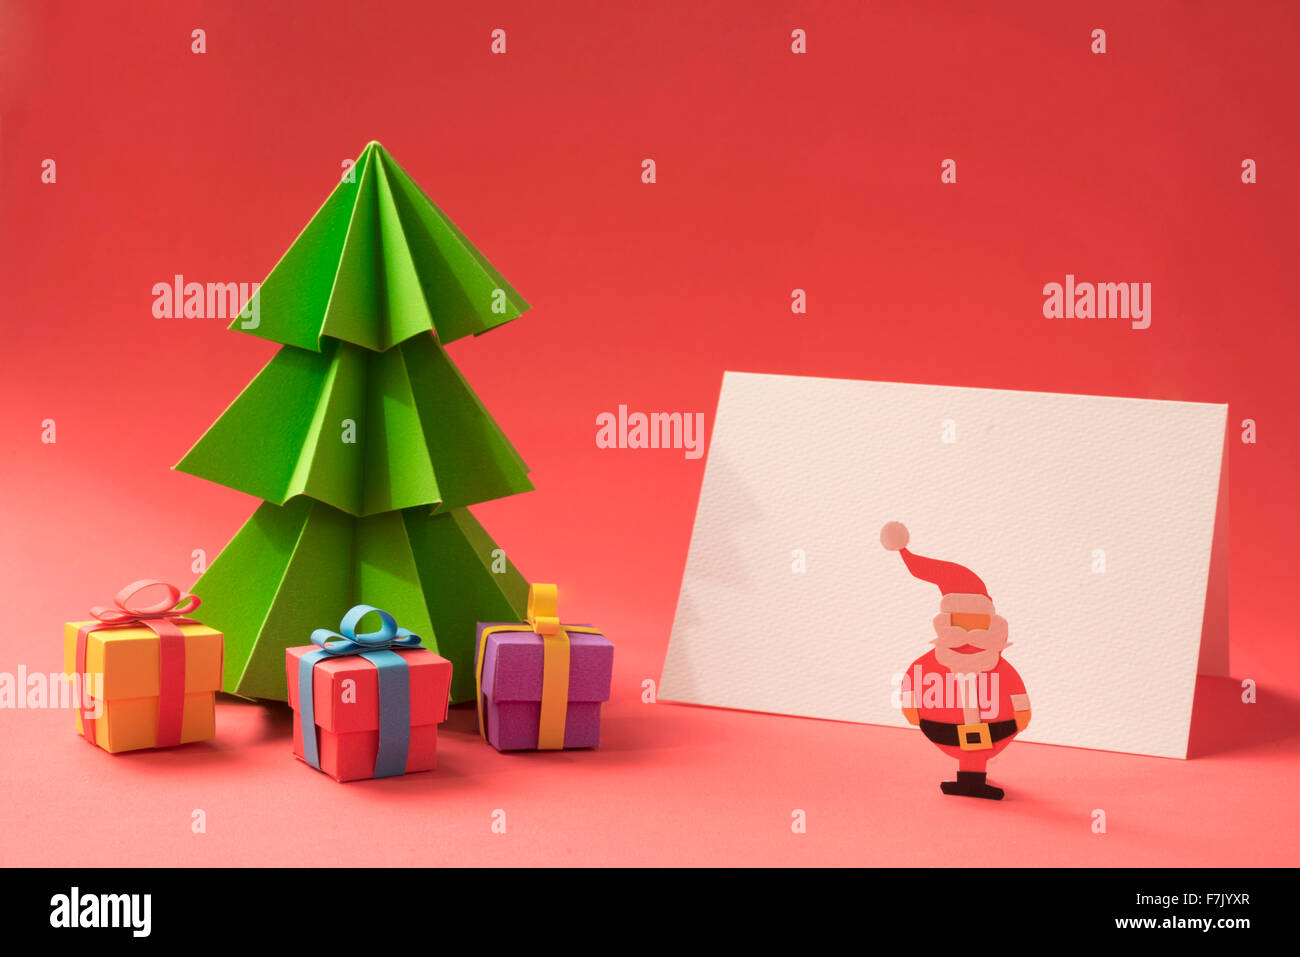 Frohe Weihnachten Scherenschnitt Szene: Weihnachten Tannenbaum mit Geschenken und leere Grußkartenvorlage. Clipping-Pfad enthält Stockfoto